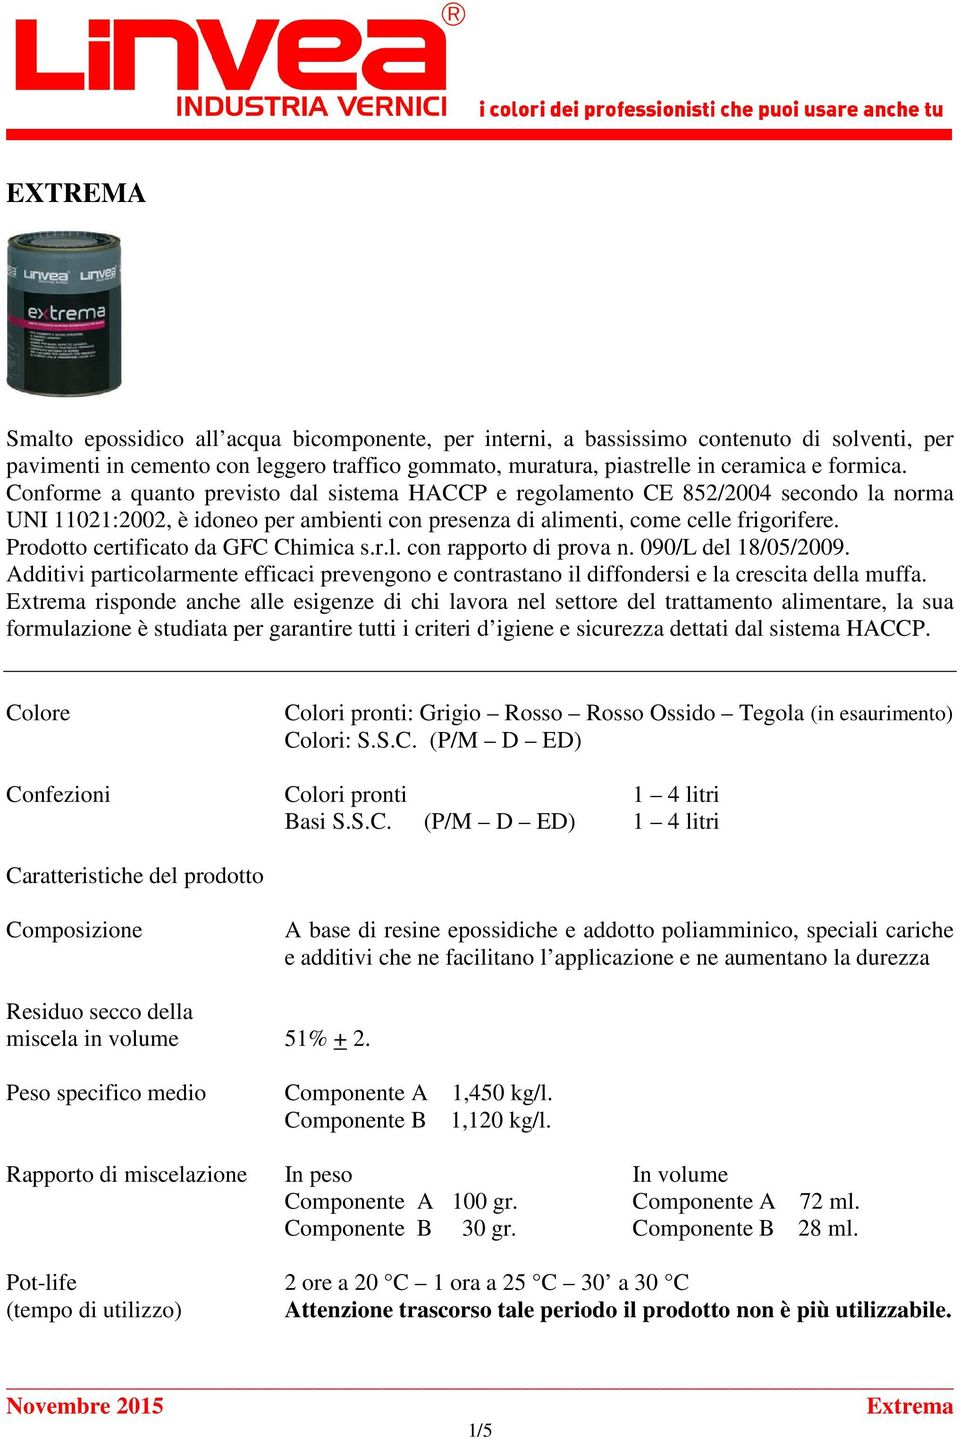 Prodotto certificato da GFC Chimica s.r.l. con rapporto di prova n. 090/L del 18/05/2009. Additivi particolarmente efficaci prevengono e contrastano il diffondersi e la crescita della muffa.